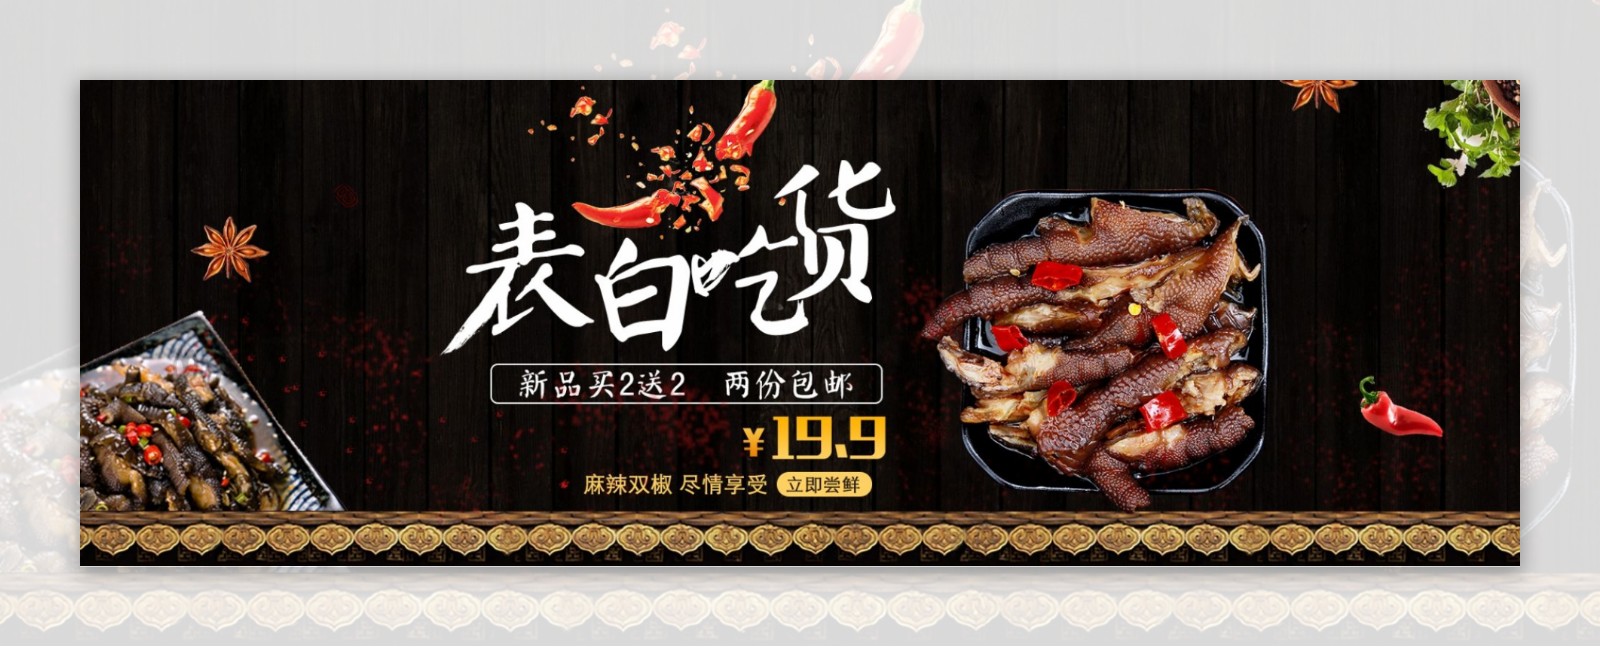 淘宝天猫夏季美食情人节食品促销海报banner